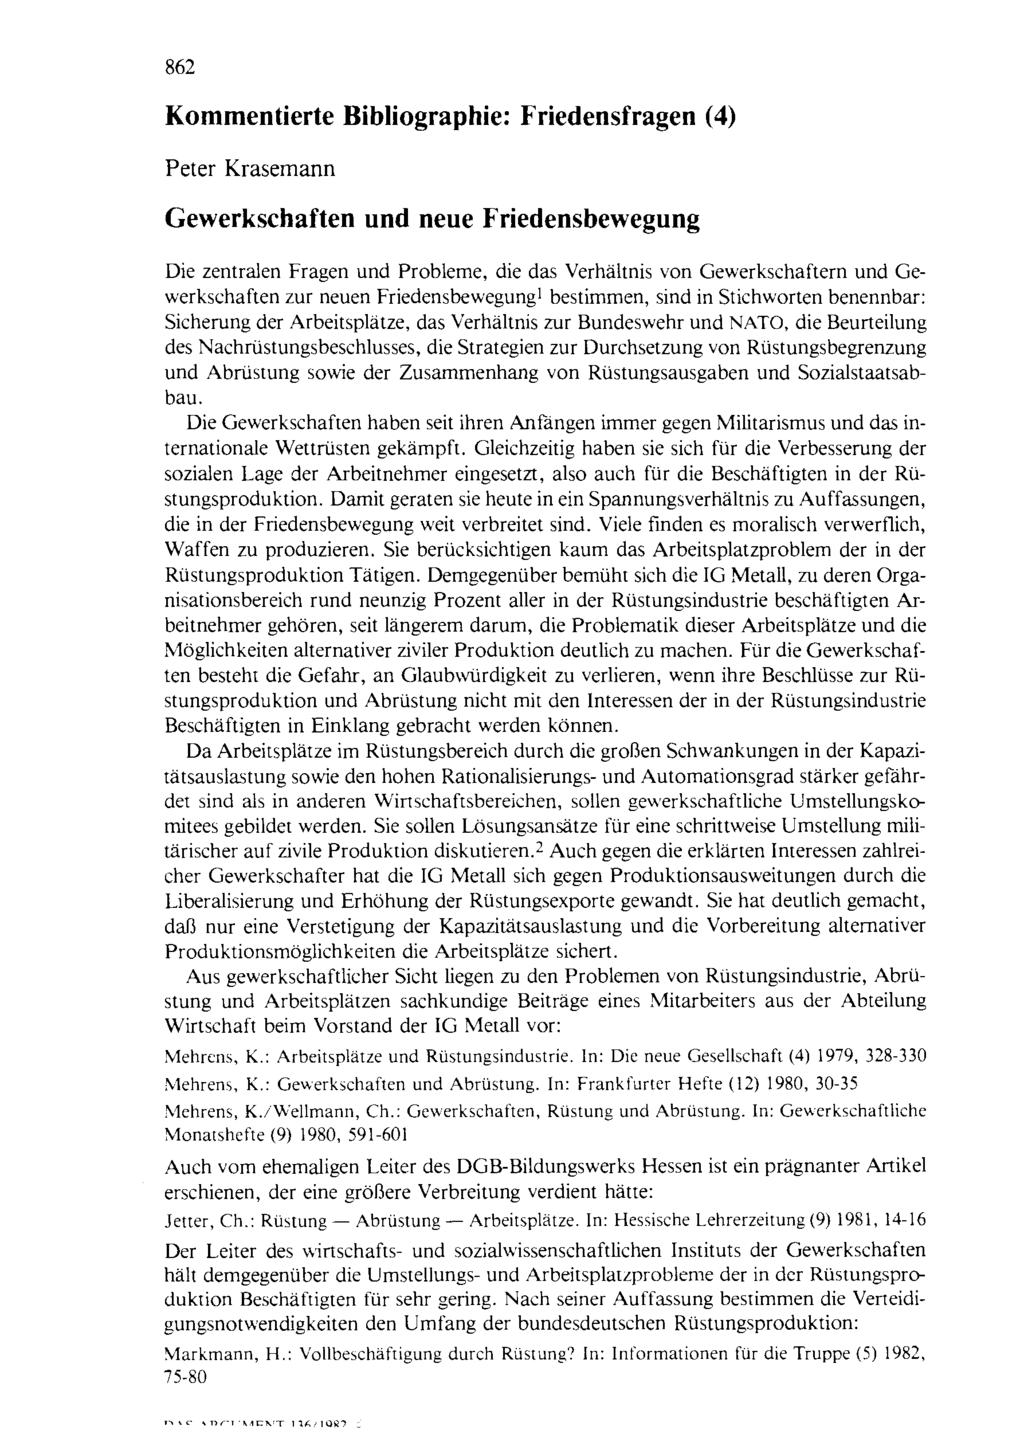 862 Kommentierte Bibliographie: Friedensfragen (4) Peter Krasemann Gewerkschaften und neue Friedensbewegung Die zentralen Fragen und Probleme, die das Verhältnis von Gewerkschaftern und